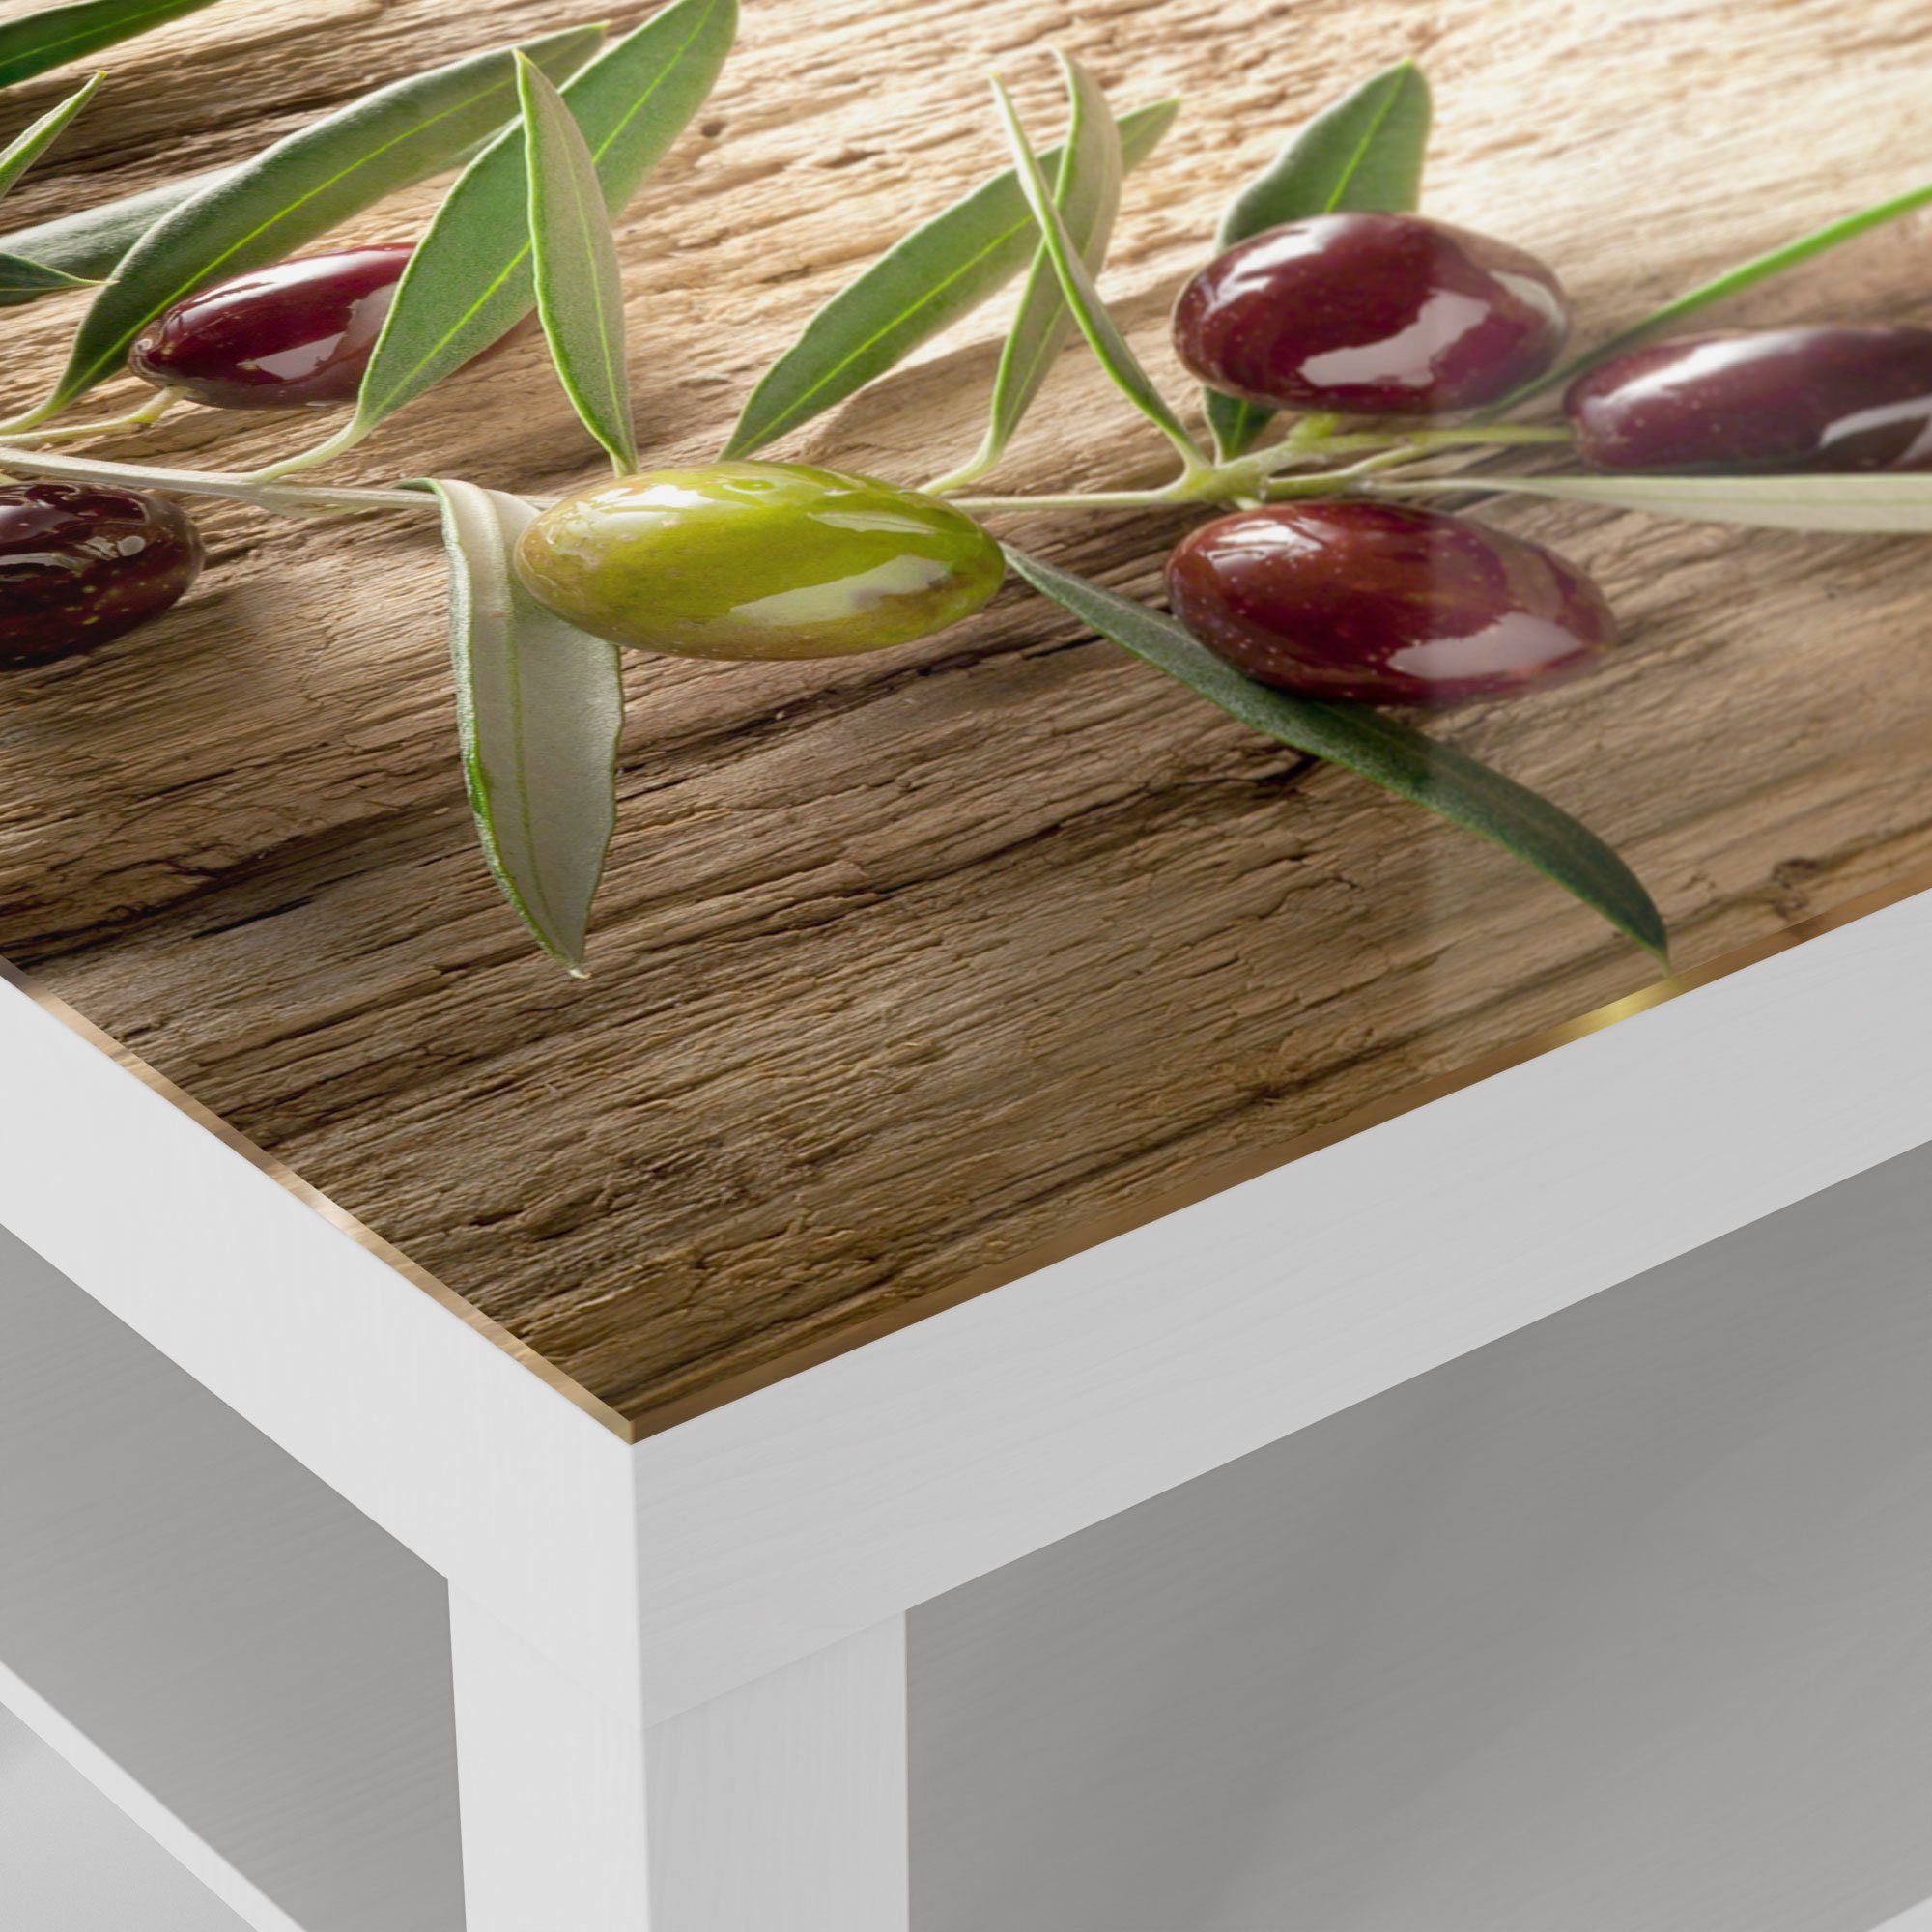 'Dekorativer Glastisch Beistelltisch Couchtisch Weiß DEQORI modern Olivenzweig', Glas